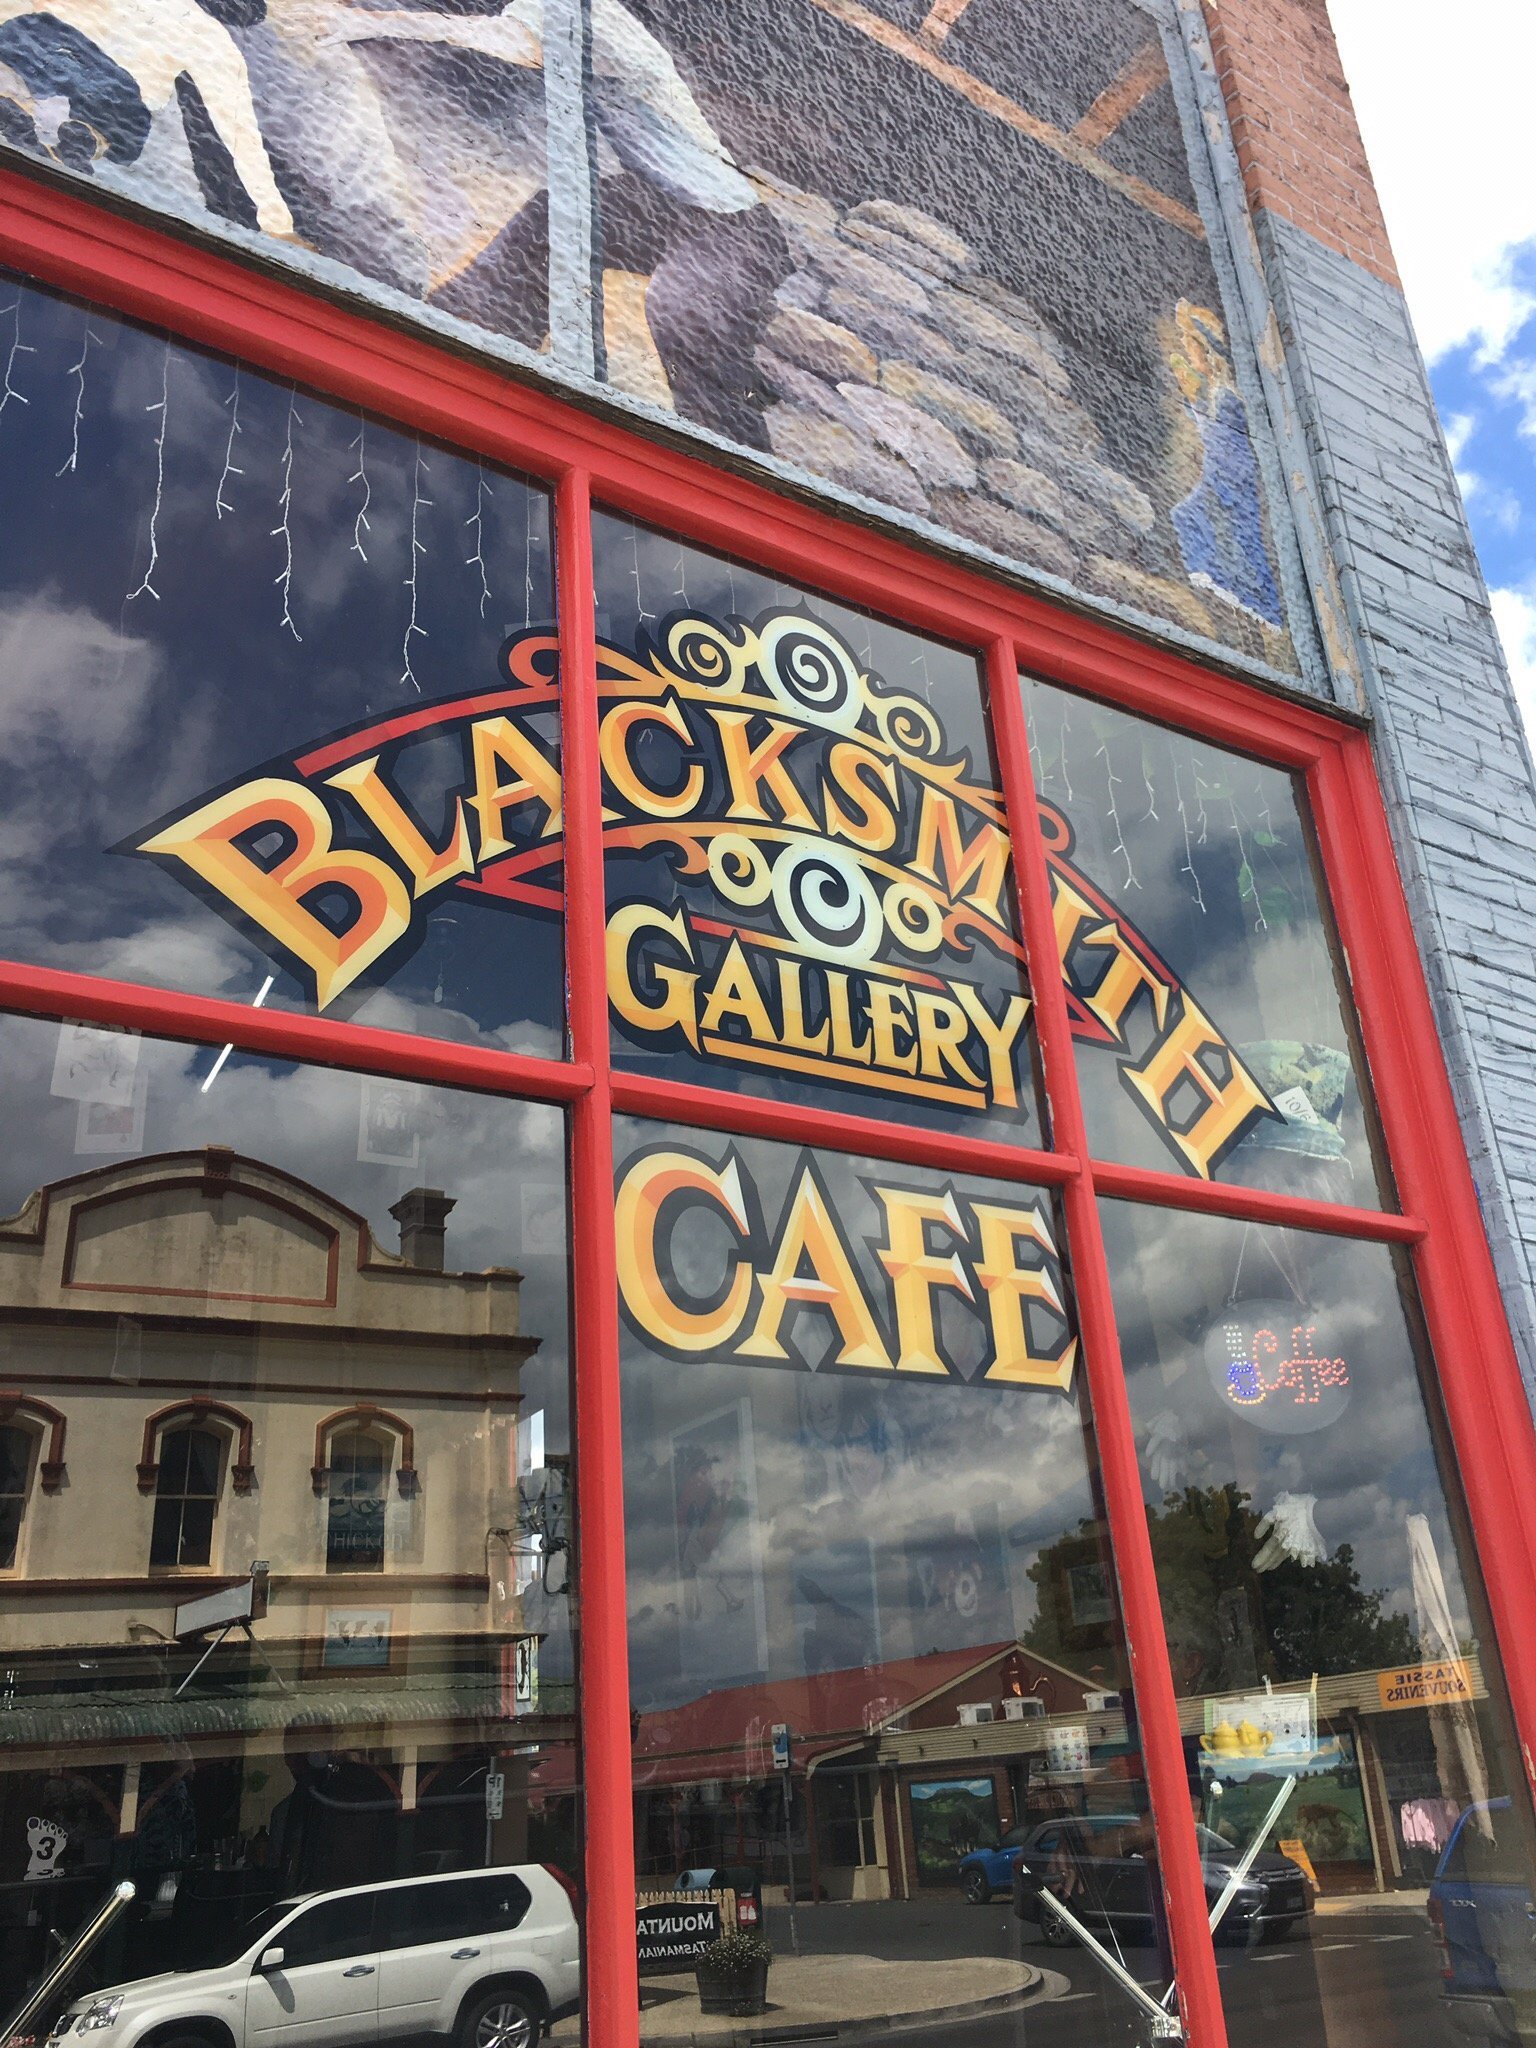 Blacksmith Gallery Cafe - Restaurants Sydney 4